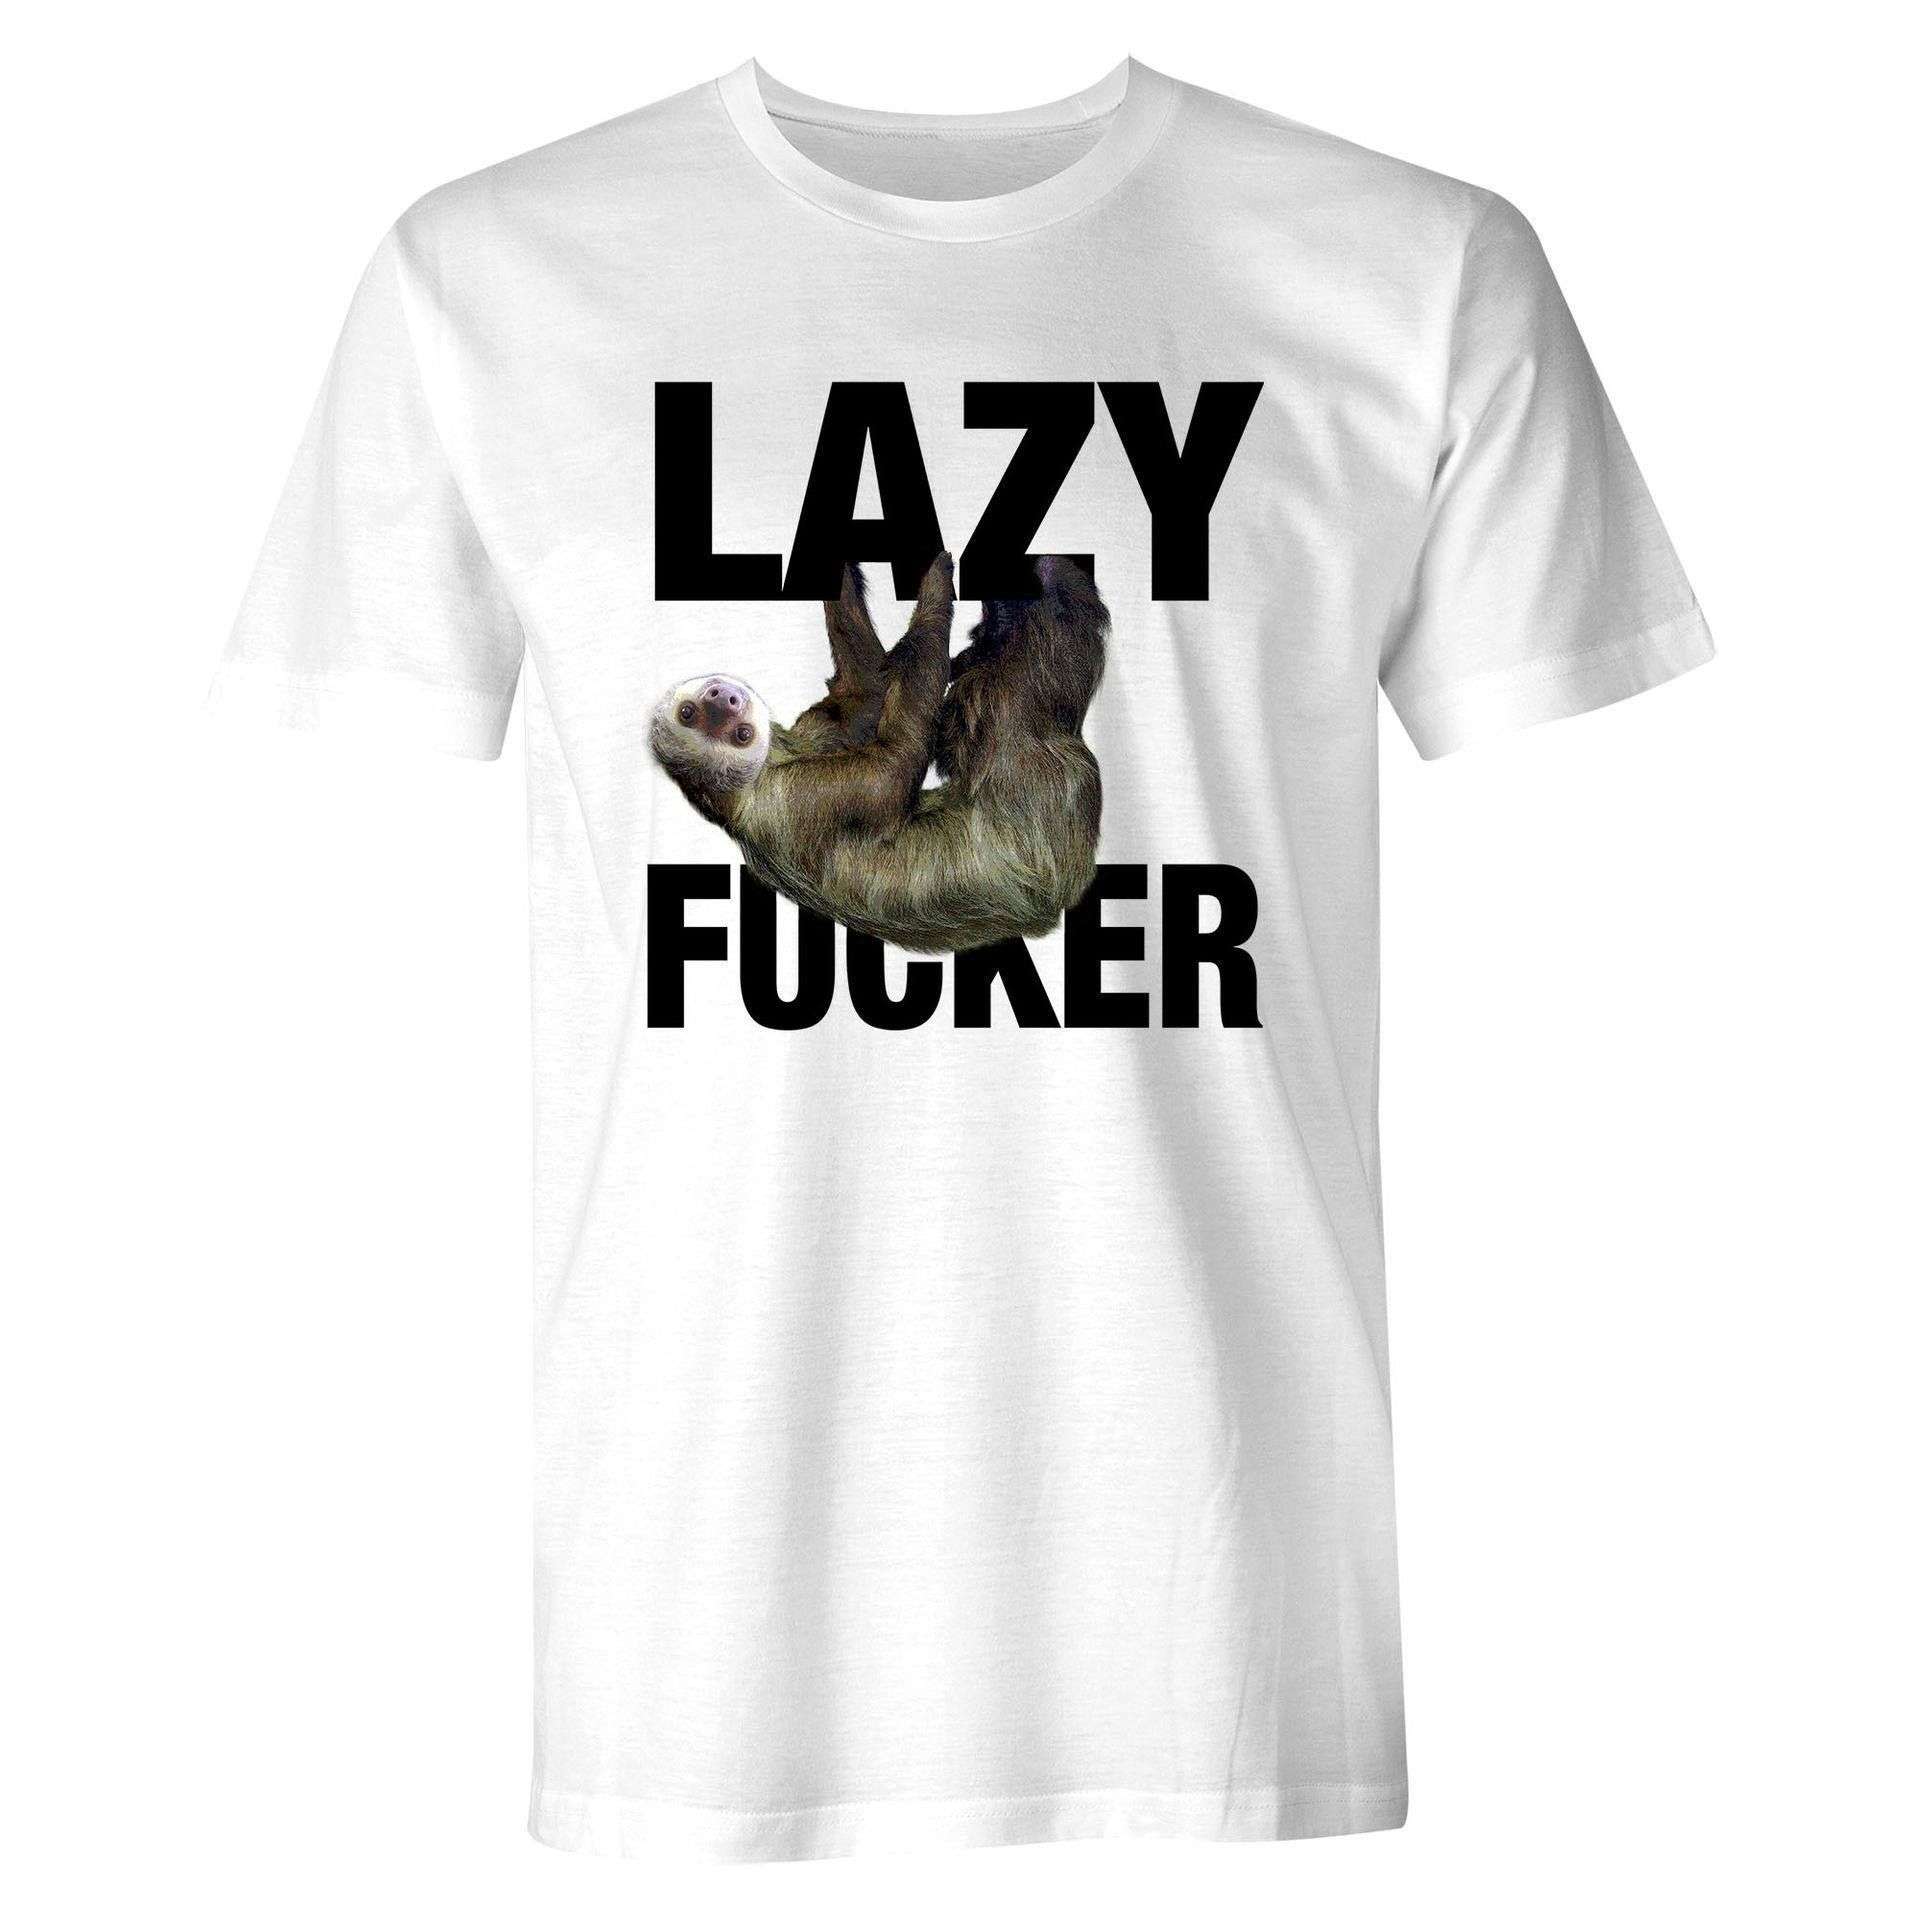 Lazy fucker - Lazy fucker sloth, sloth the lazy animal